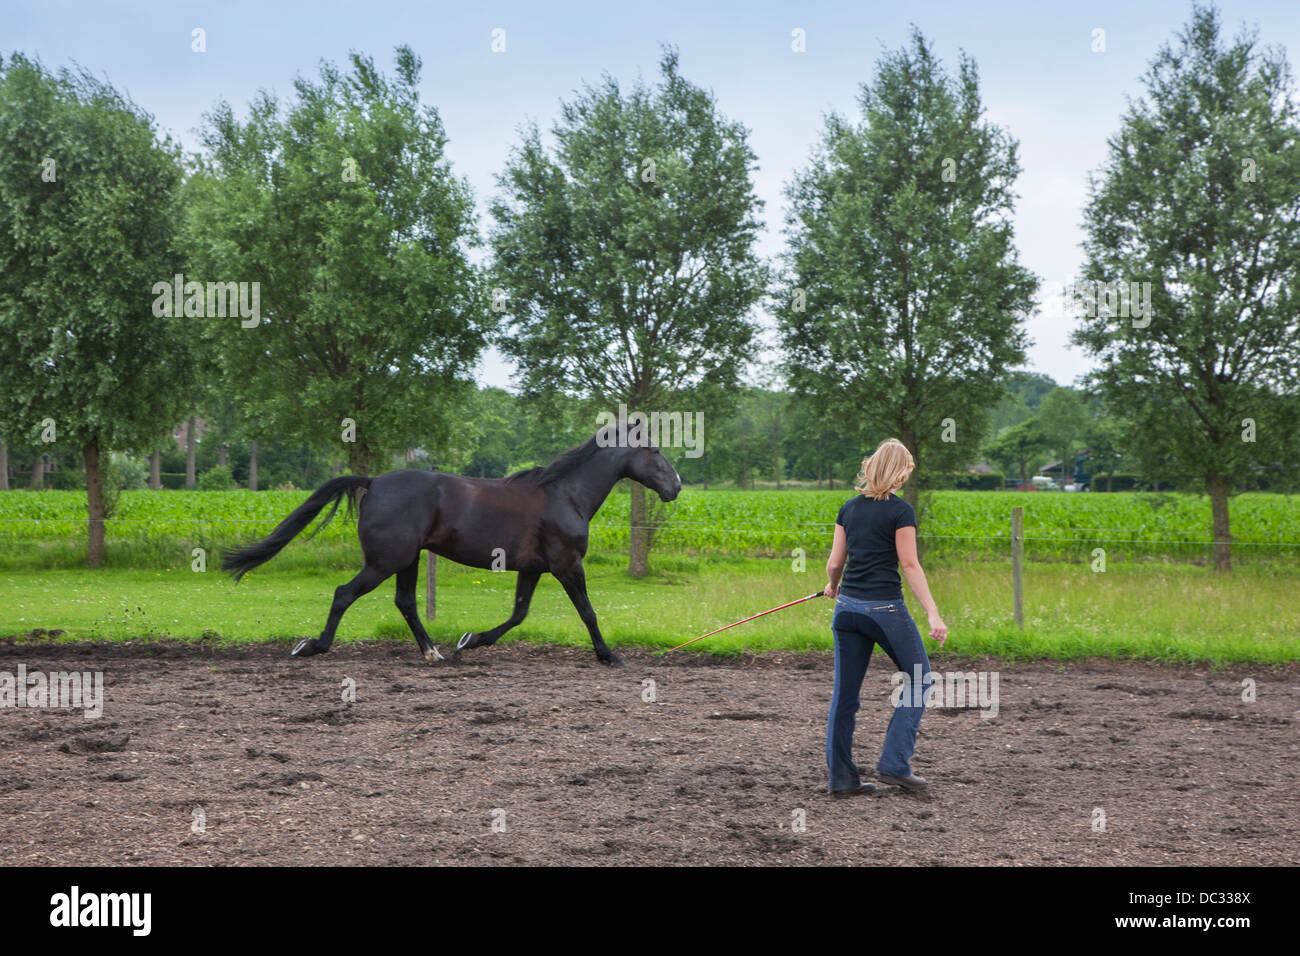 Jinete femenino con látigo marrón de capacitación el trote de caballo andar durante la sesión de doma Foto de stock